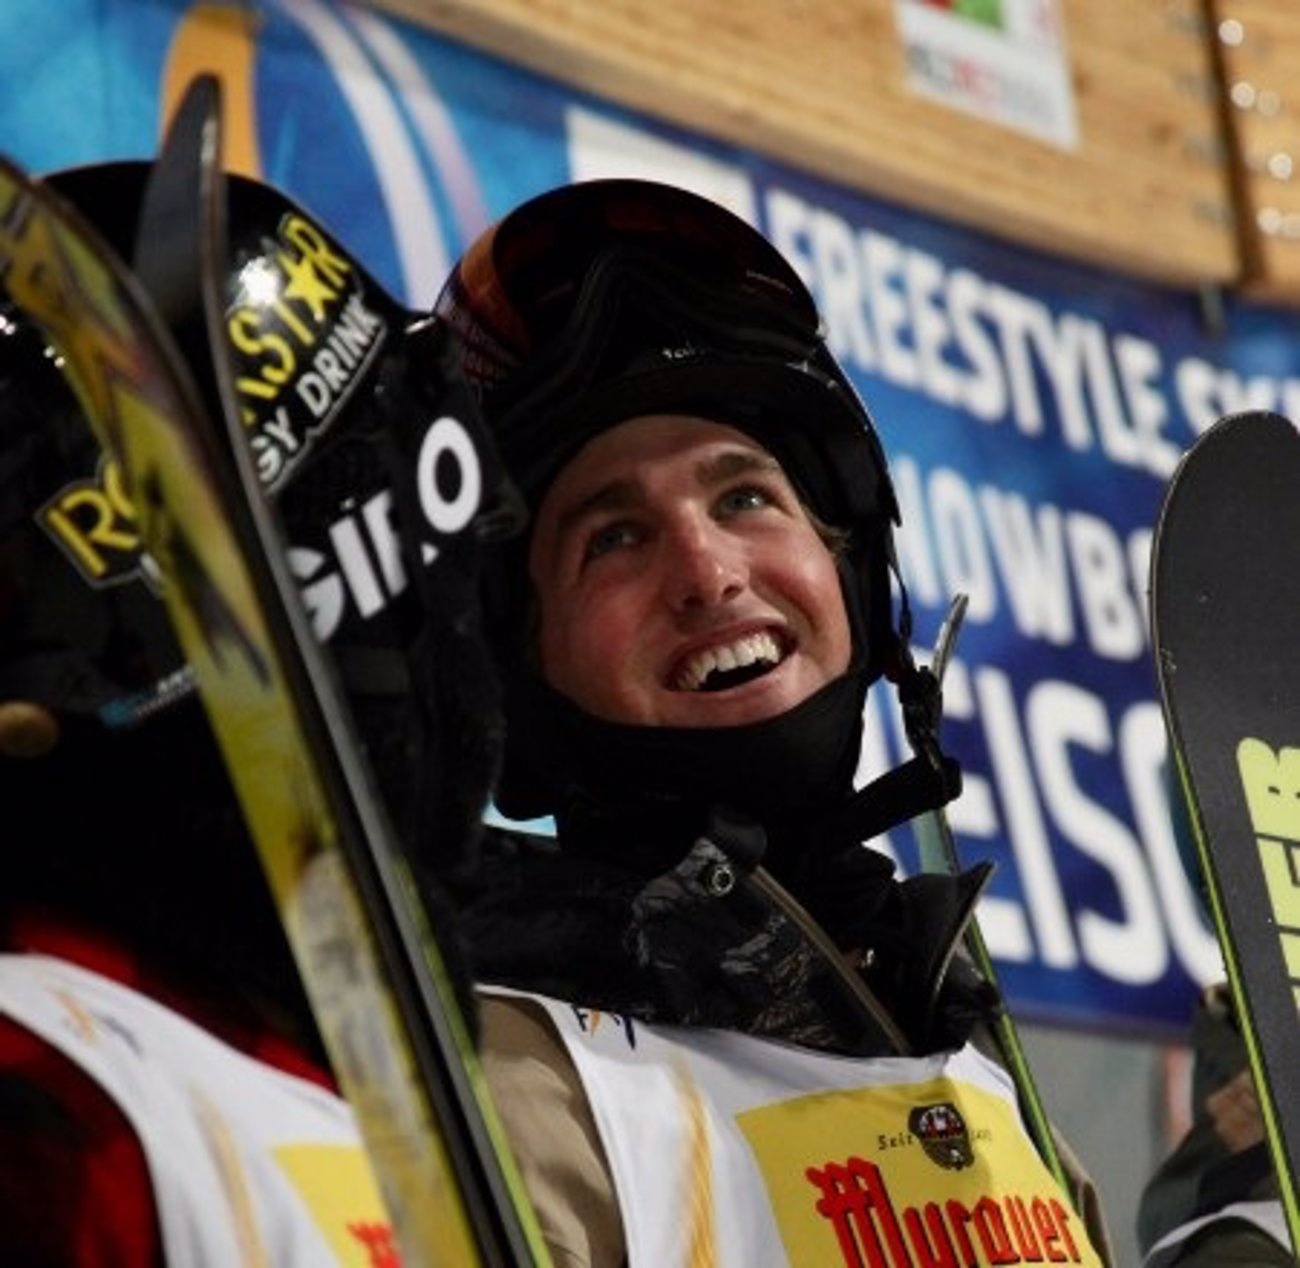 Kyle Smaine, Weltmeister im Skirennsport, stirbt bei Lawinenabgang in Japan